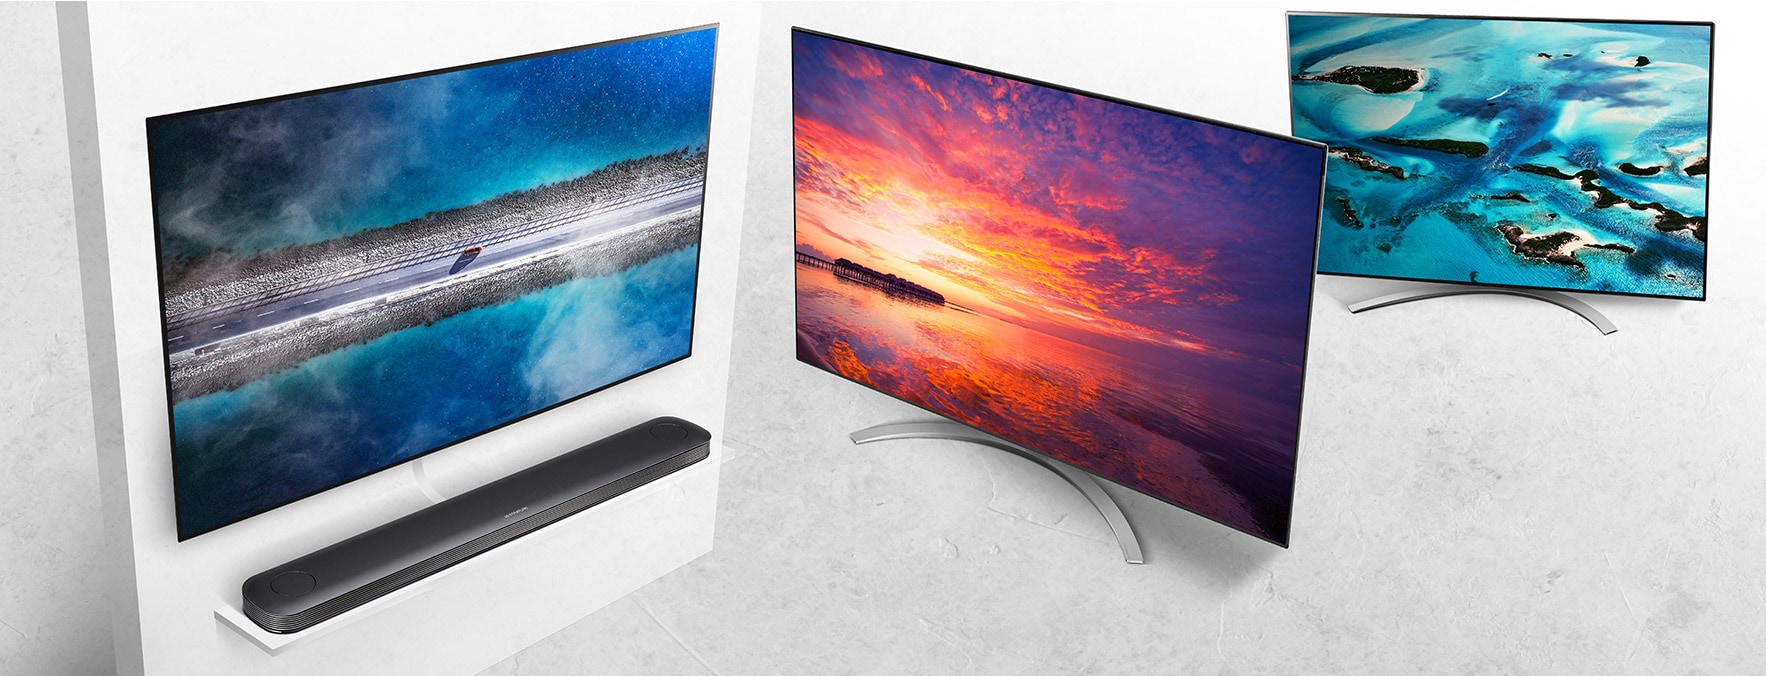 Fedezze fel az LG OLED TV-k és NanoCell TV-k termékcsaládját